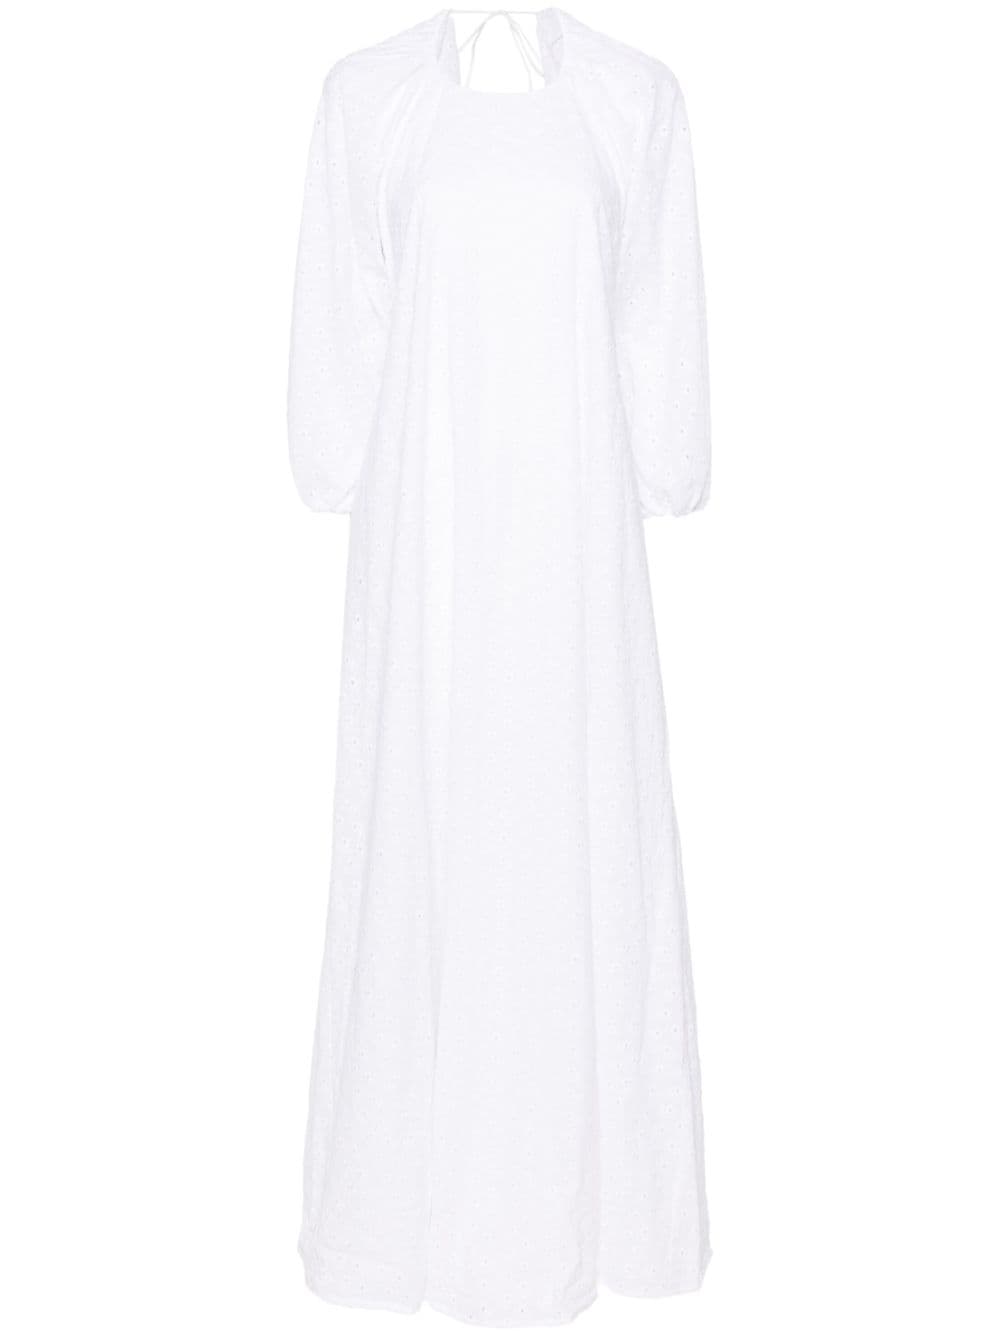 Bernadette Fran broderie anglaise maxi dress - White von Bernadette